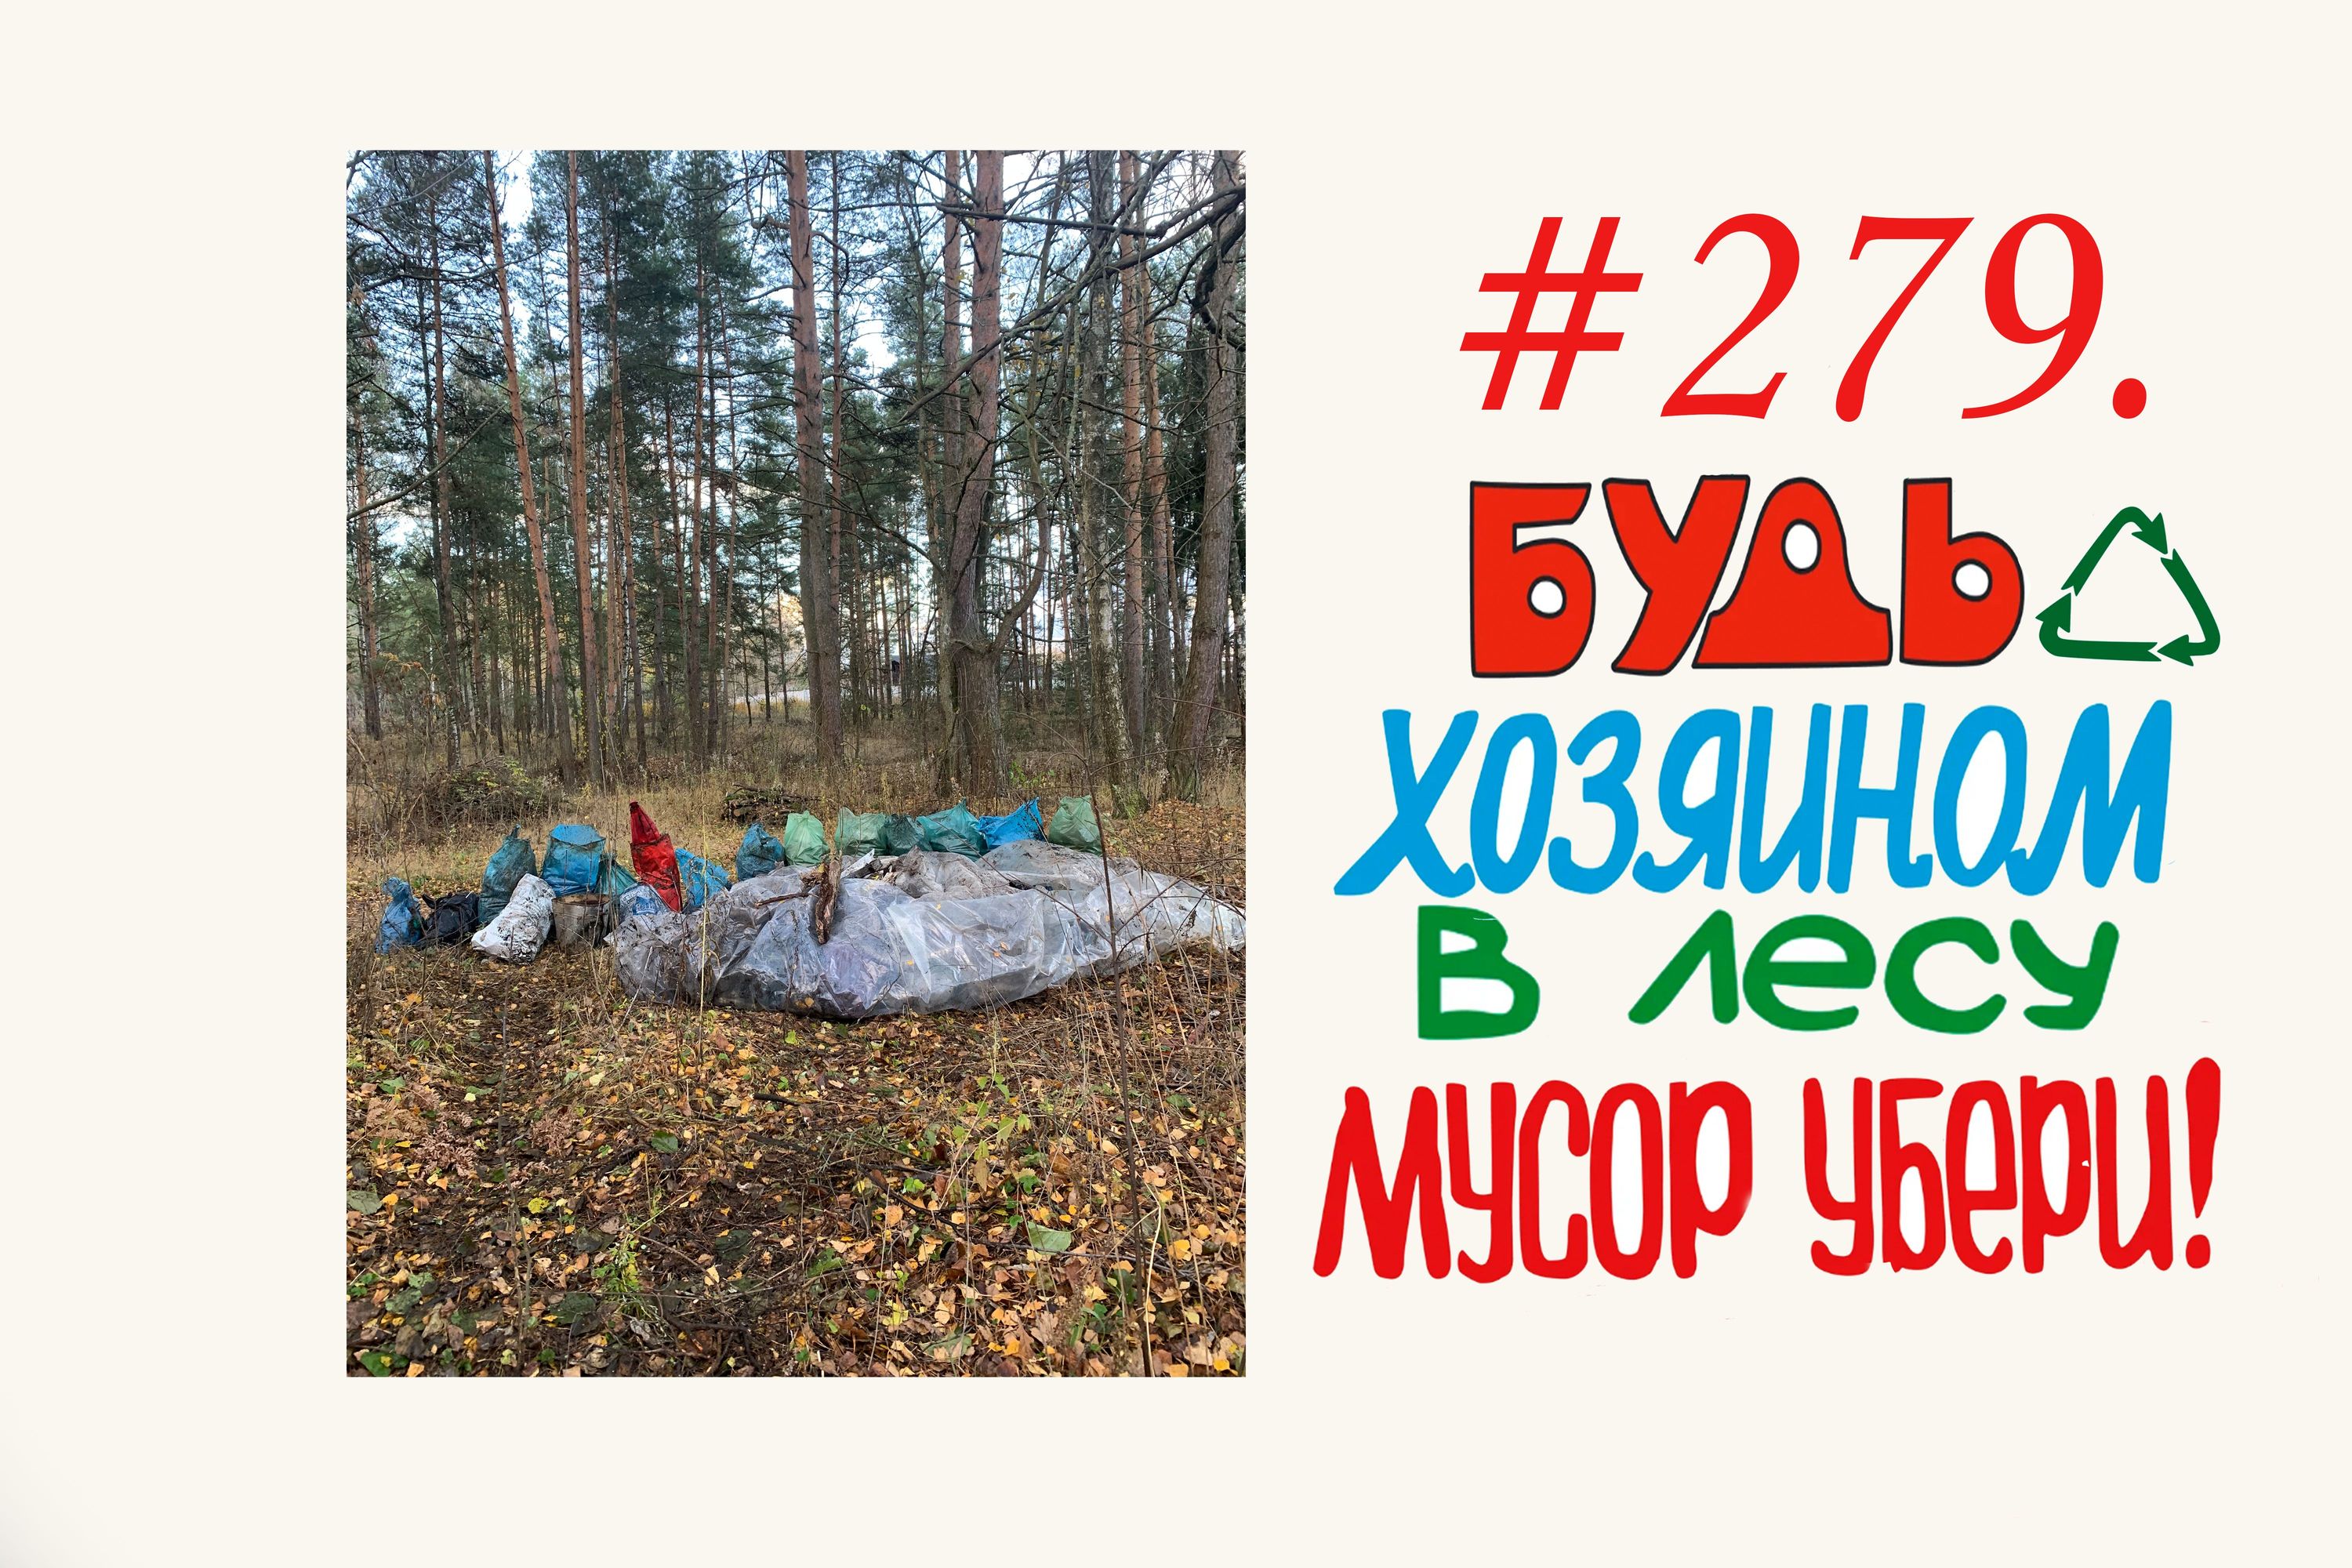 Subbotnik in Russia (136 мешков)  #279